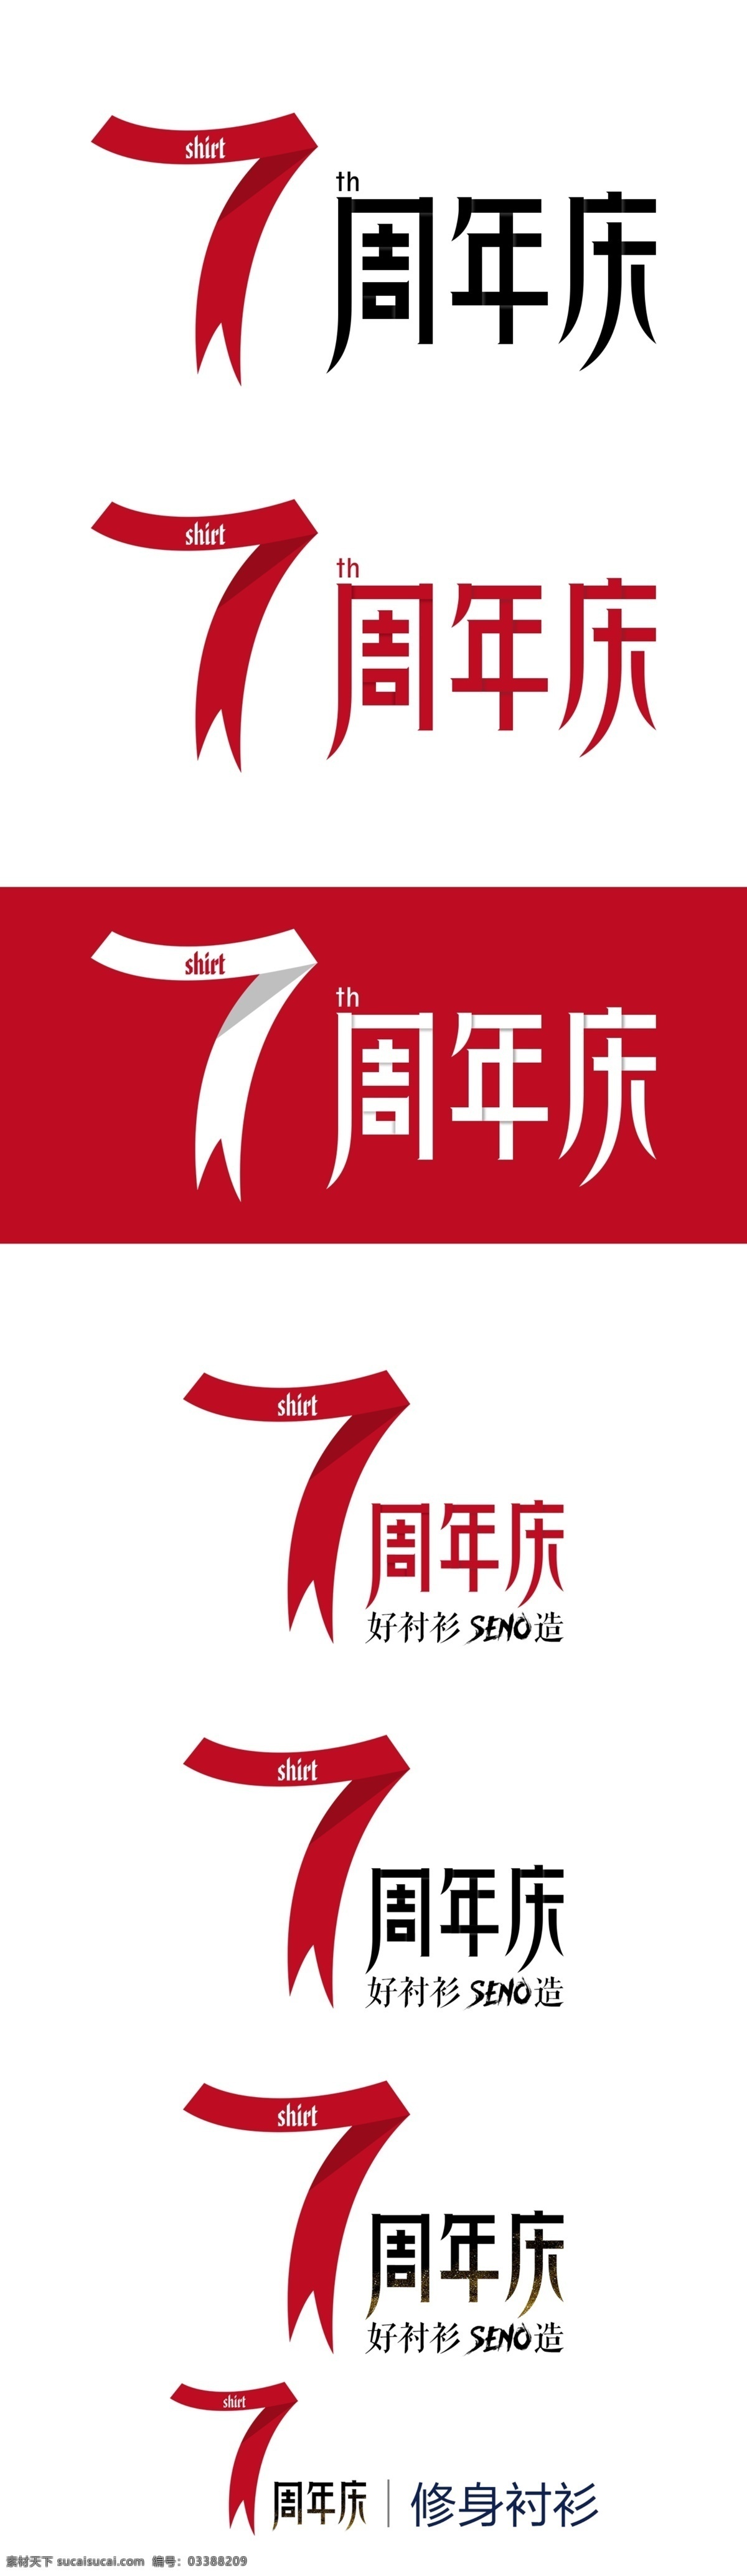 周年庆 红色 喜庆 logopsd 模板 7周年庆 logo标识 psd模板 th